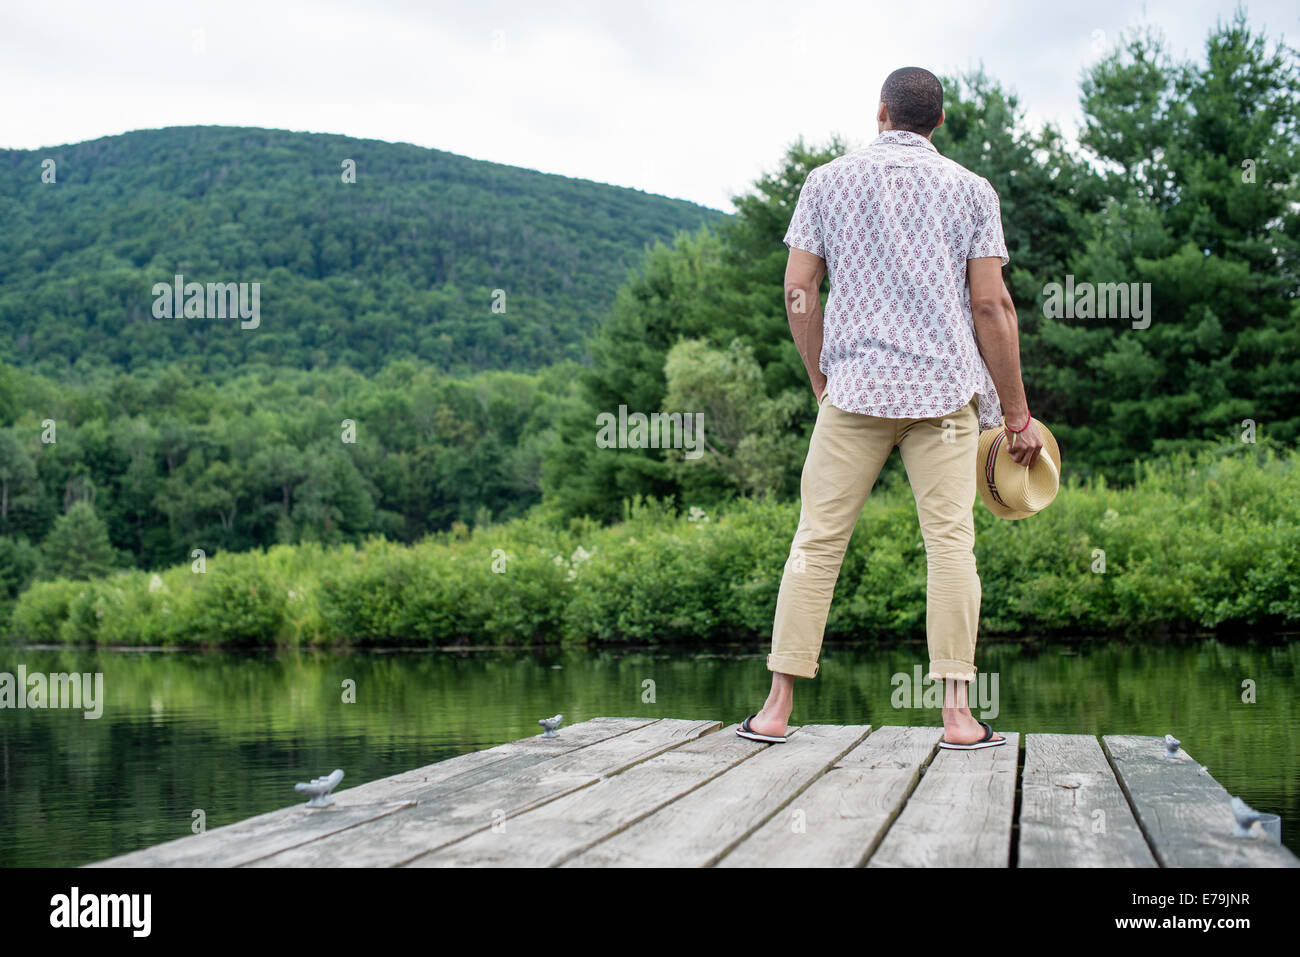 Un homme debout sur une jetée en bois donnant sur un lac calme. Banque D'Images